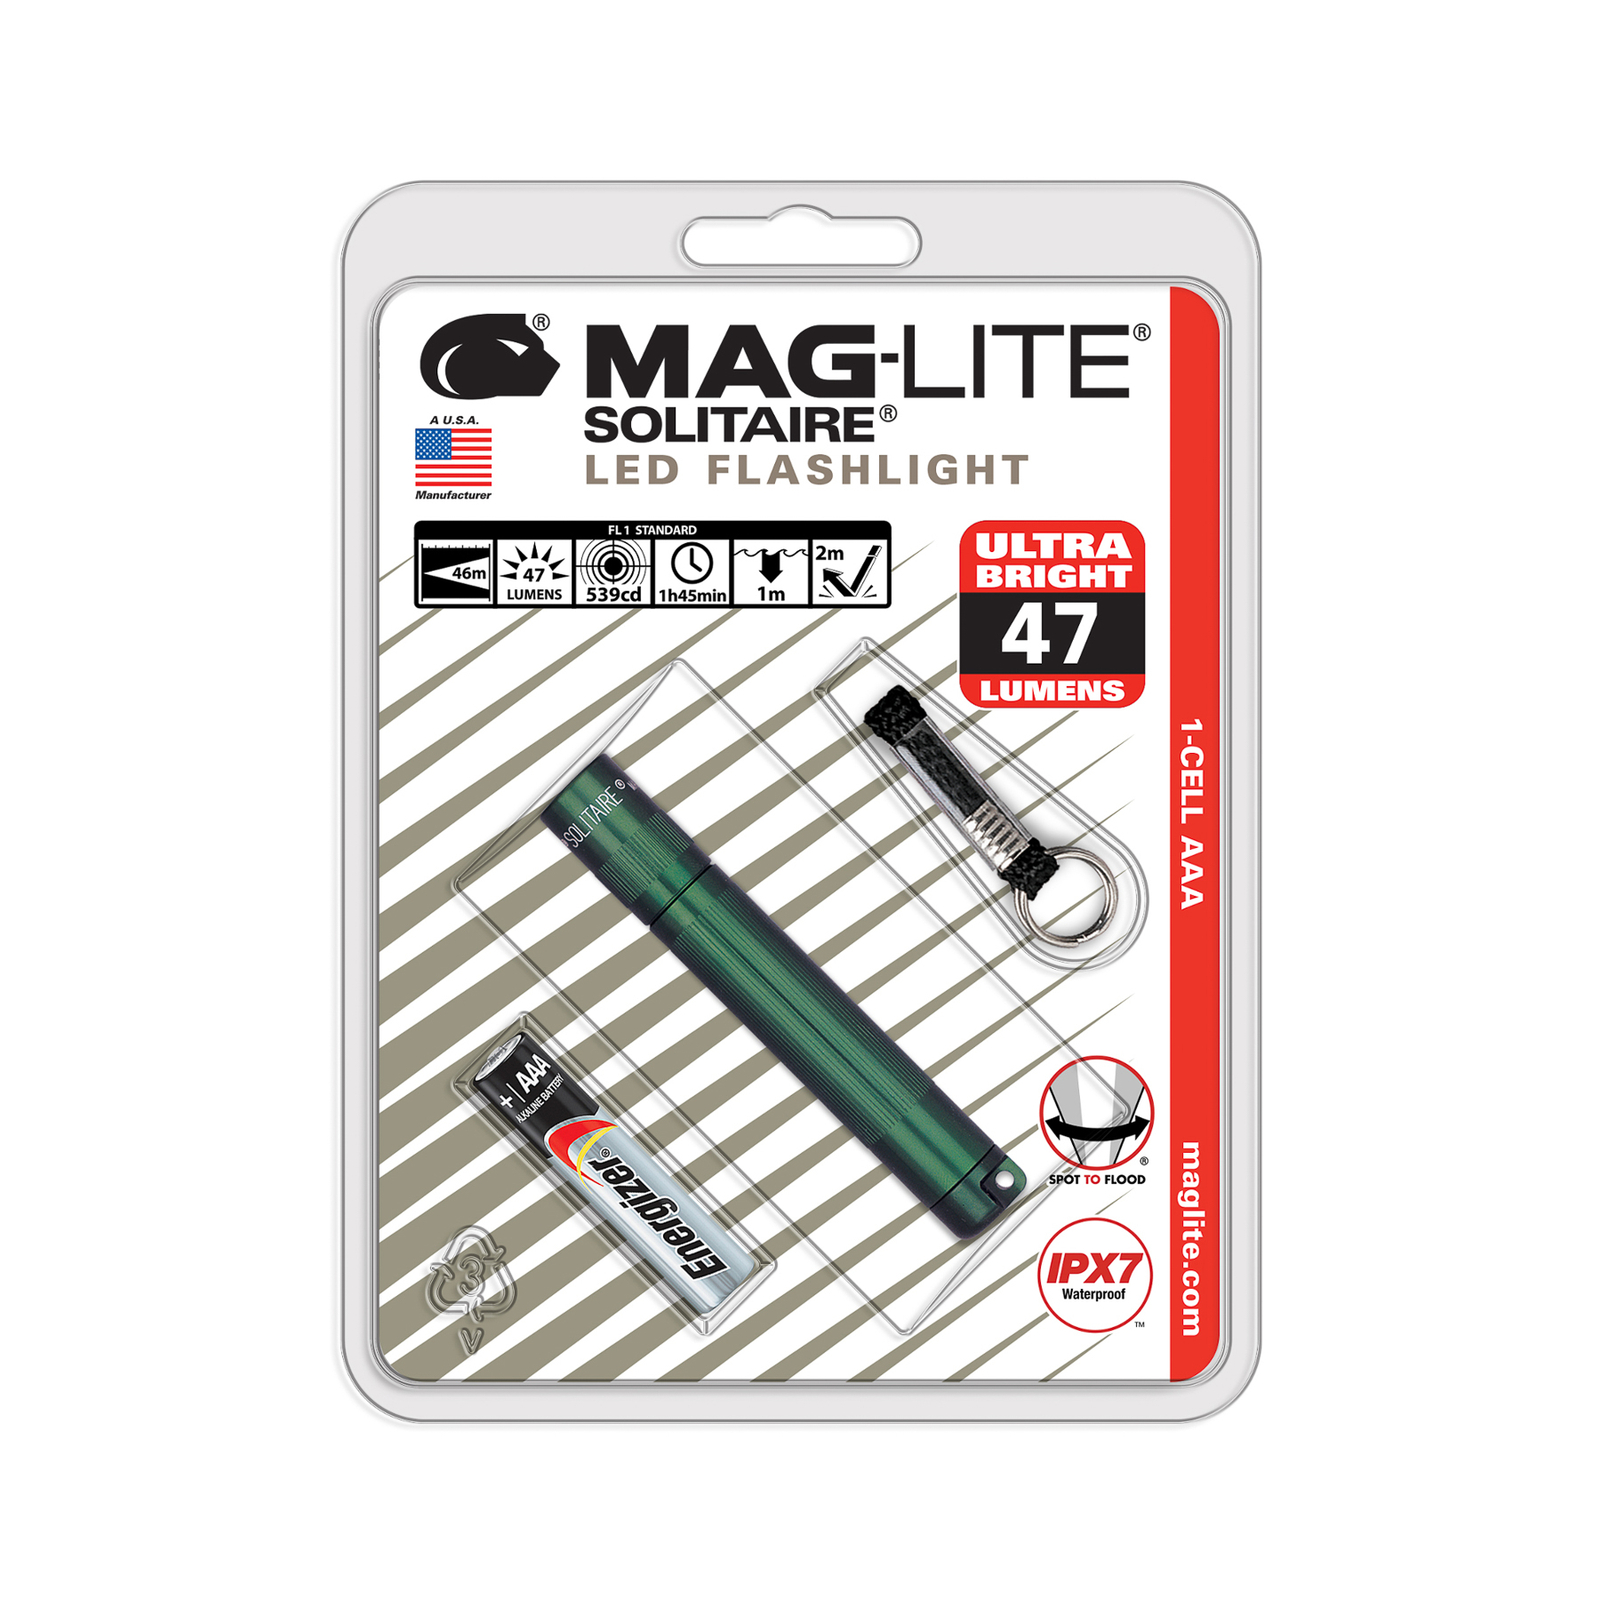 Svítilna Maglite LED Solitaire, 1 článek AAA, zelená